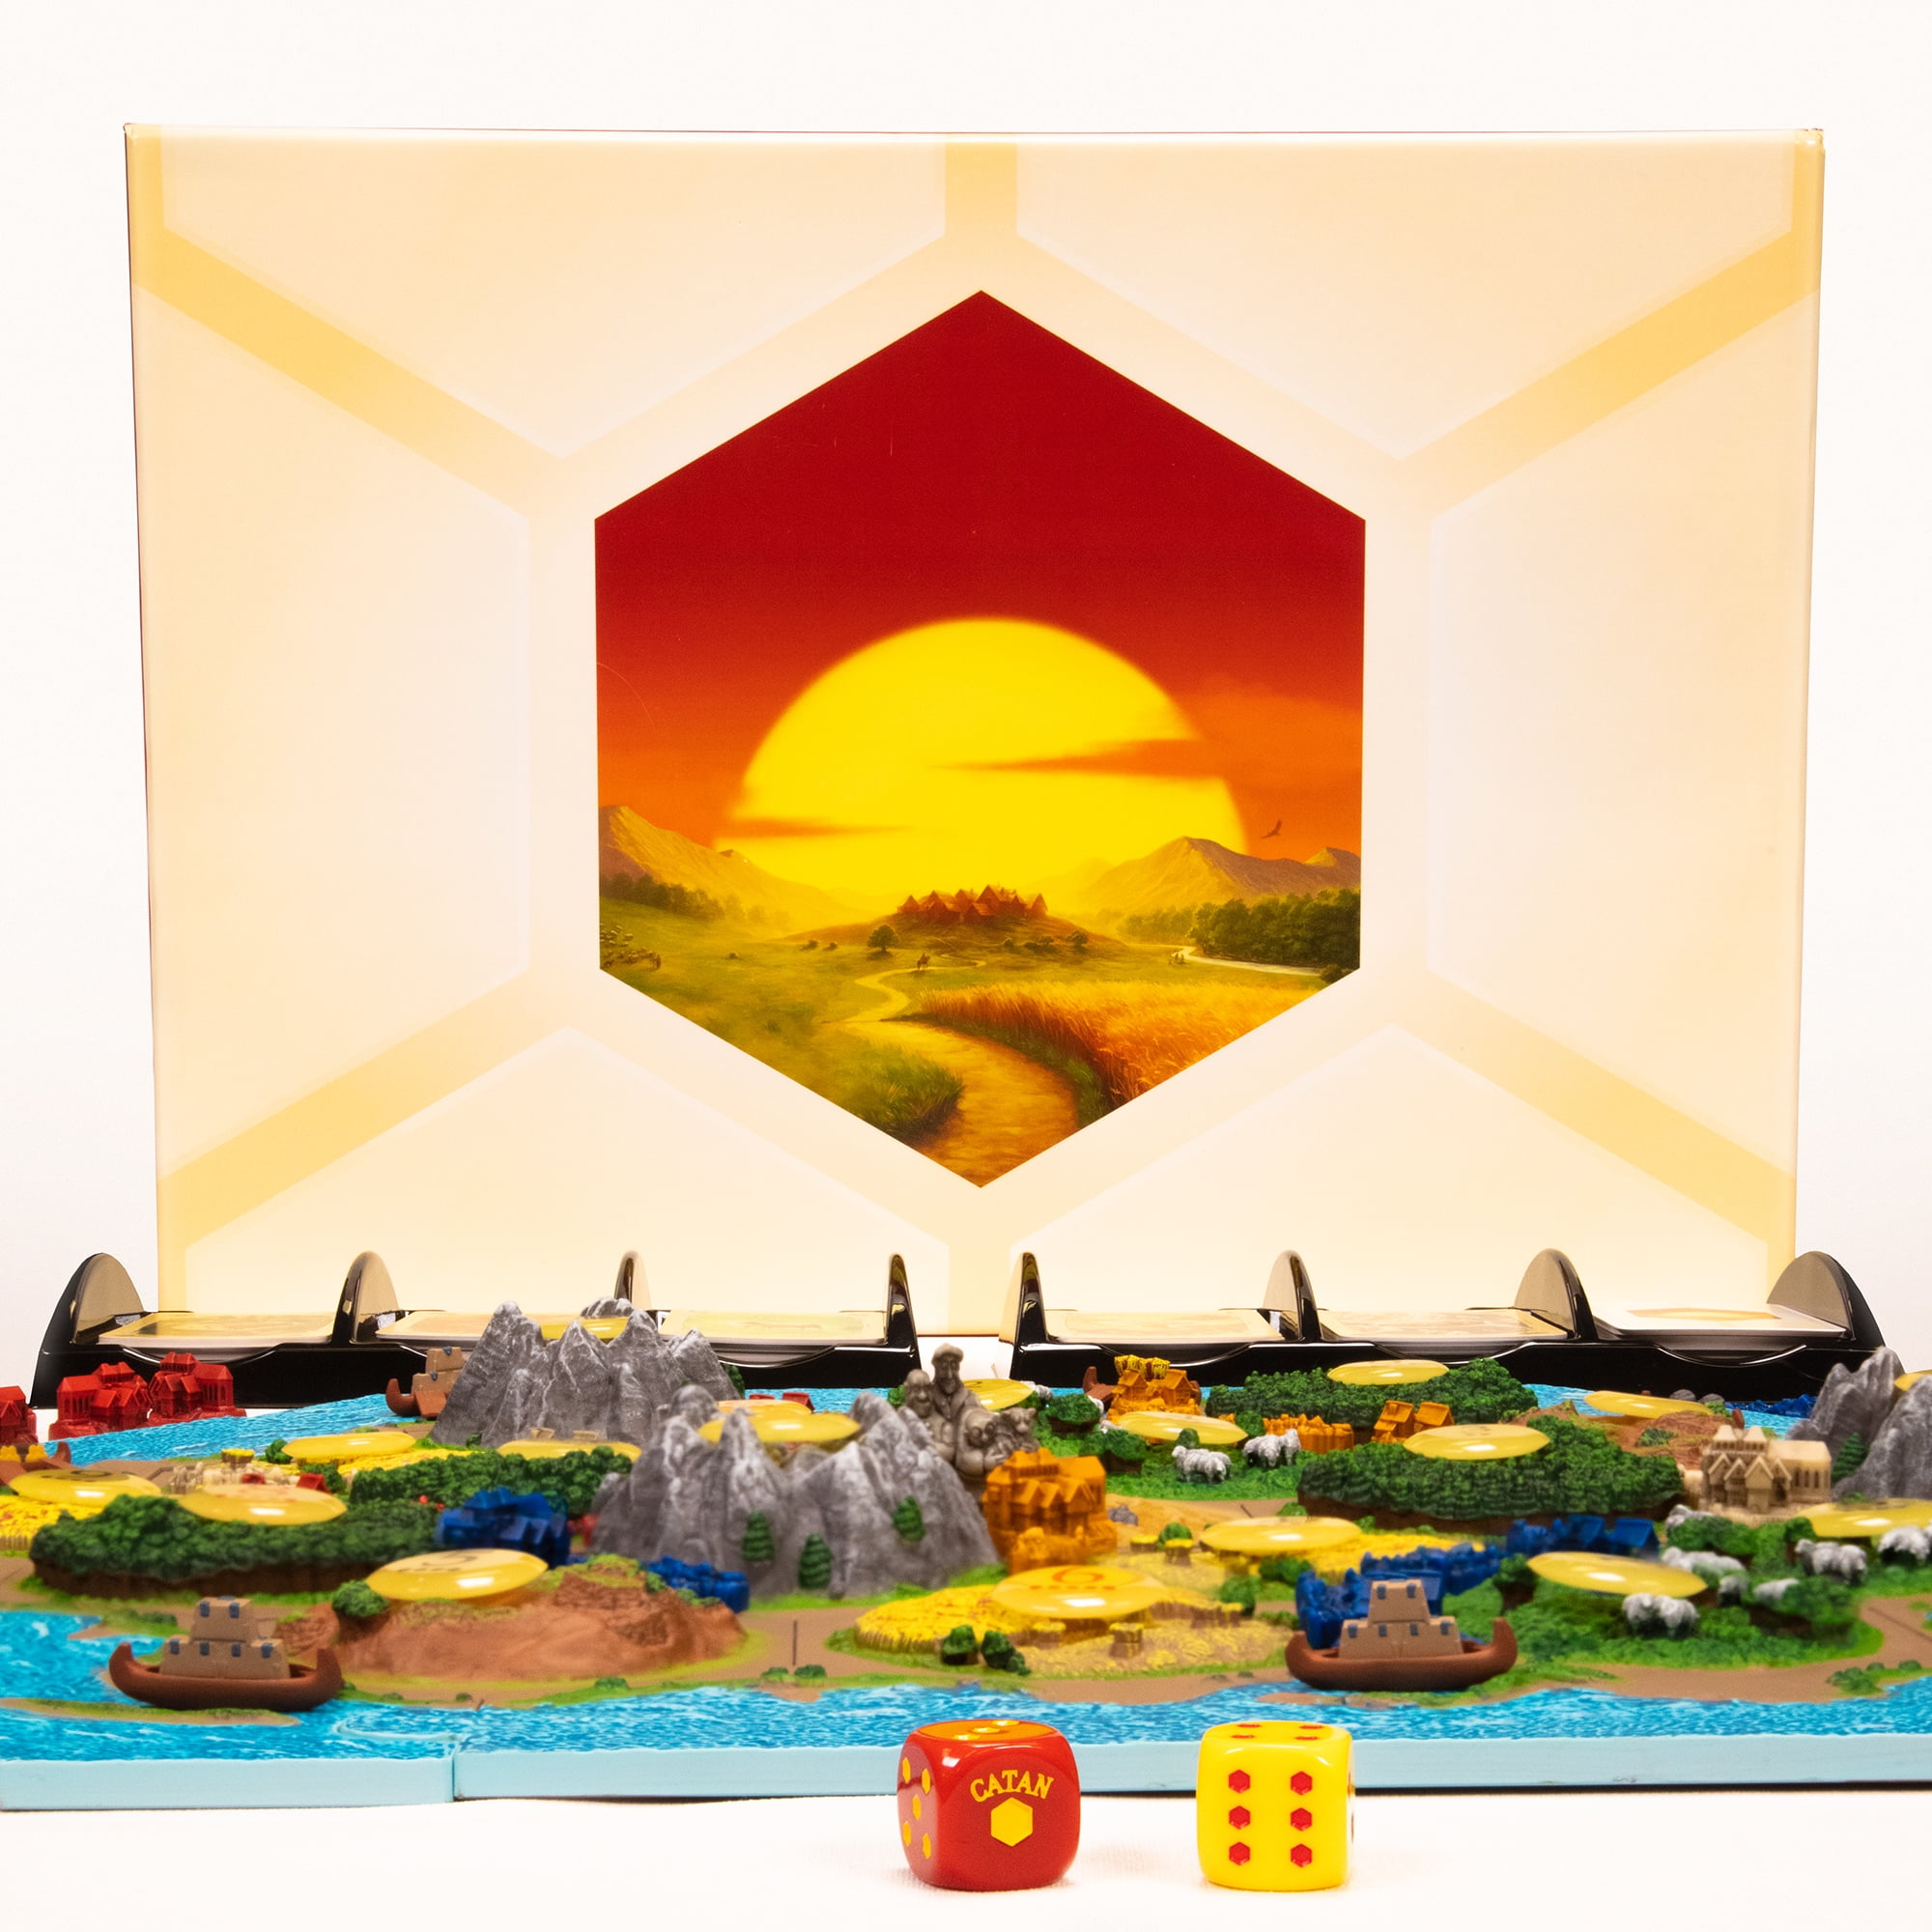 CATAN 3D Edition - 25th Anniversary 3D Catan Board Set by Catan